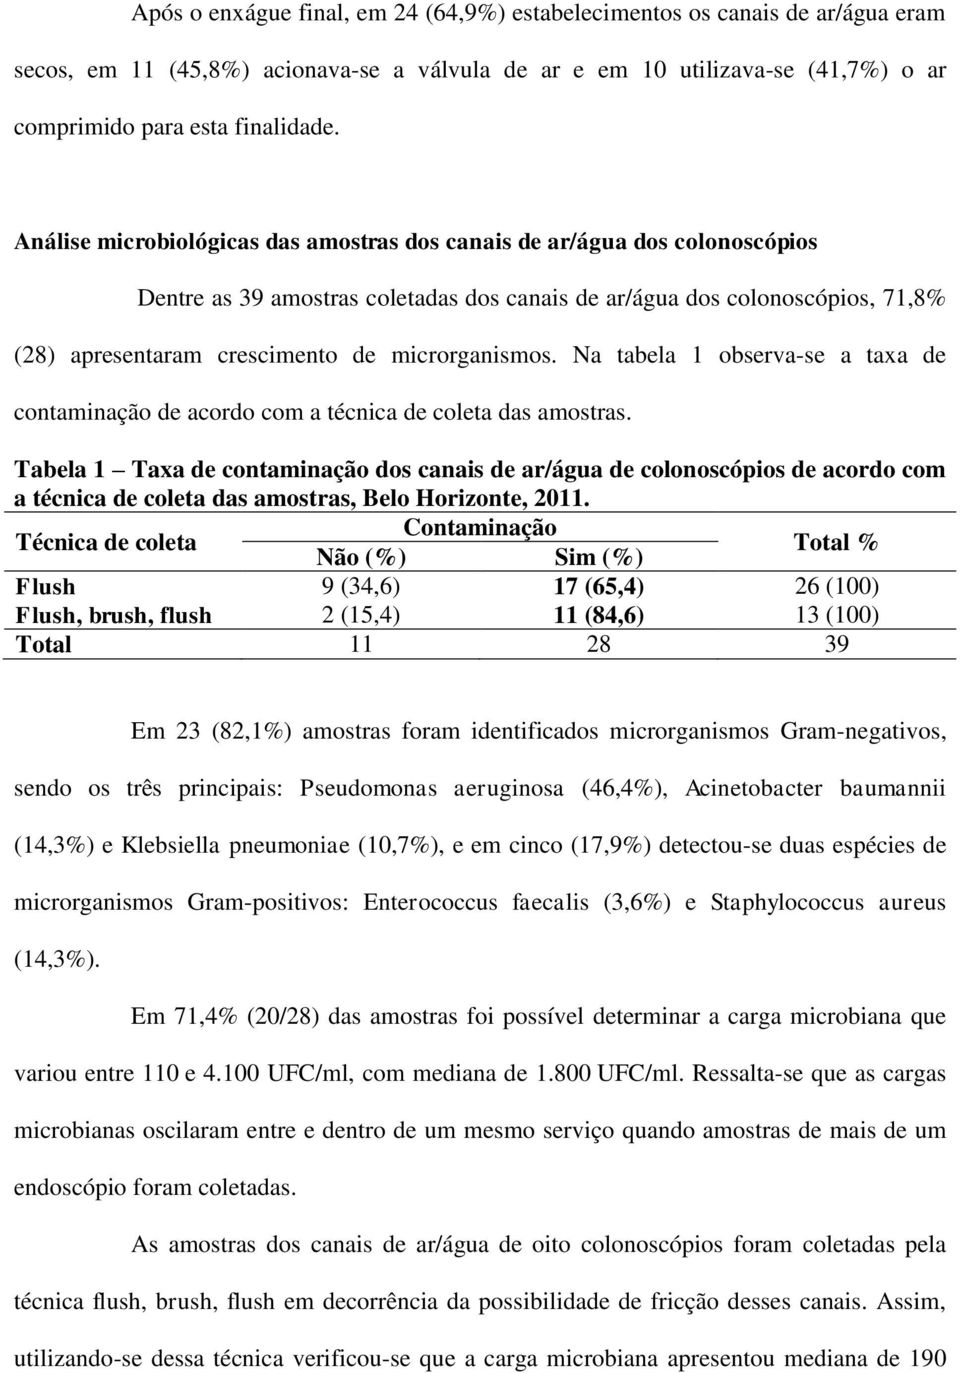 microrganismos. Na tabela 1 observa-se a taxa de contaminação de acordo com a técnica de coleta das amostras.